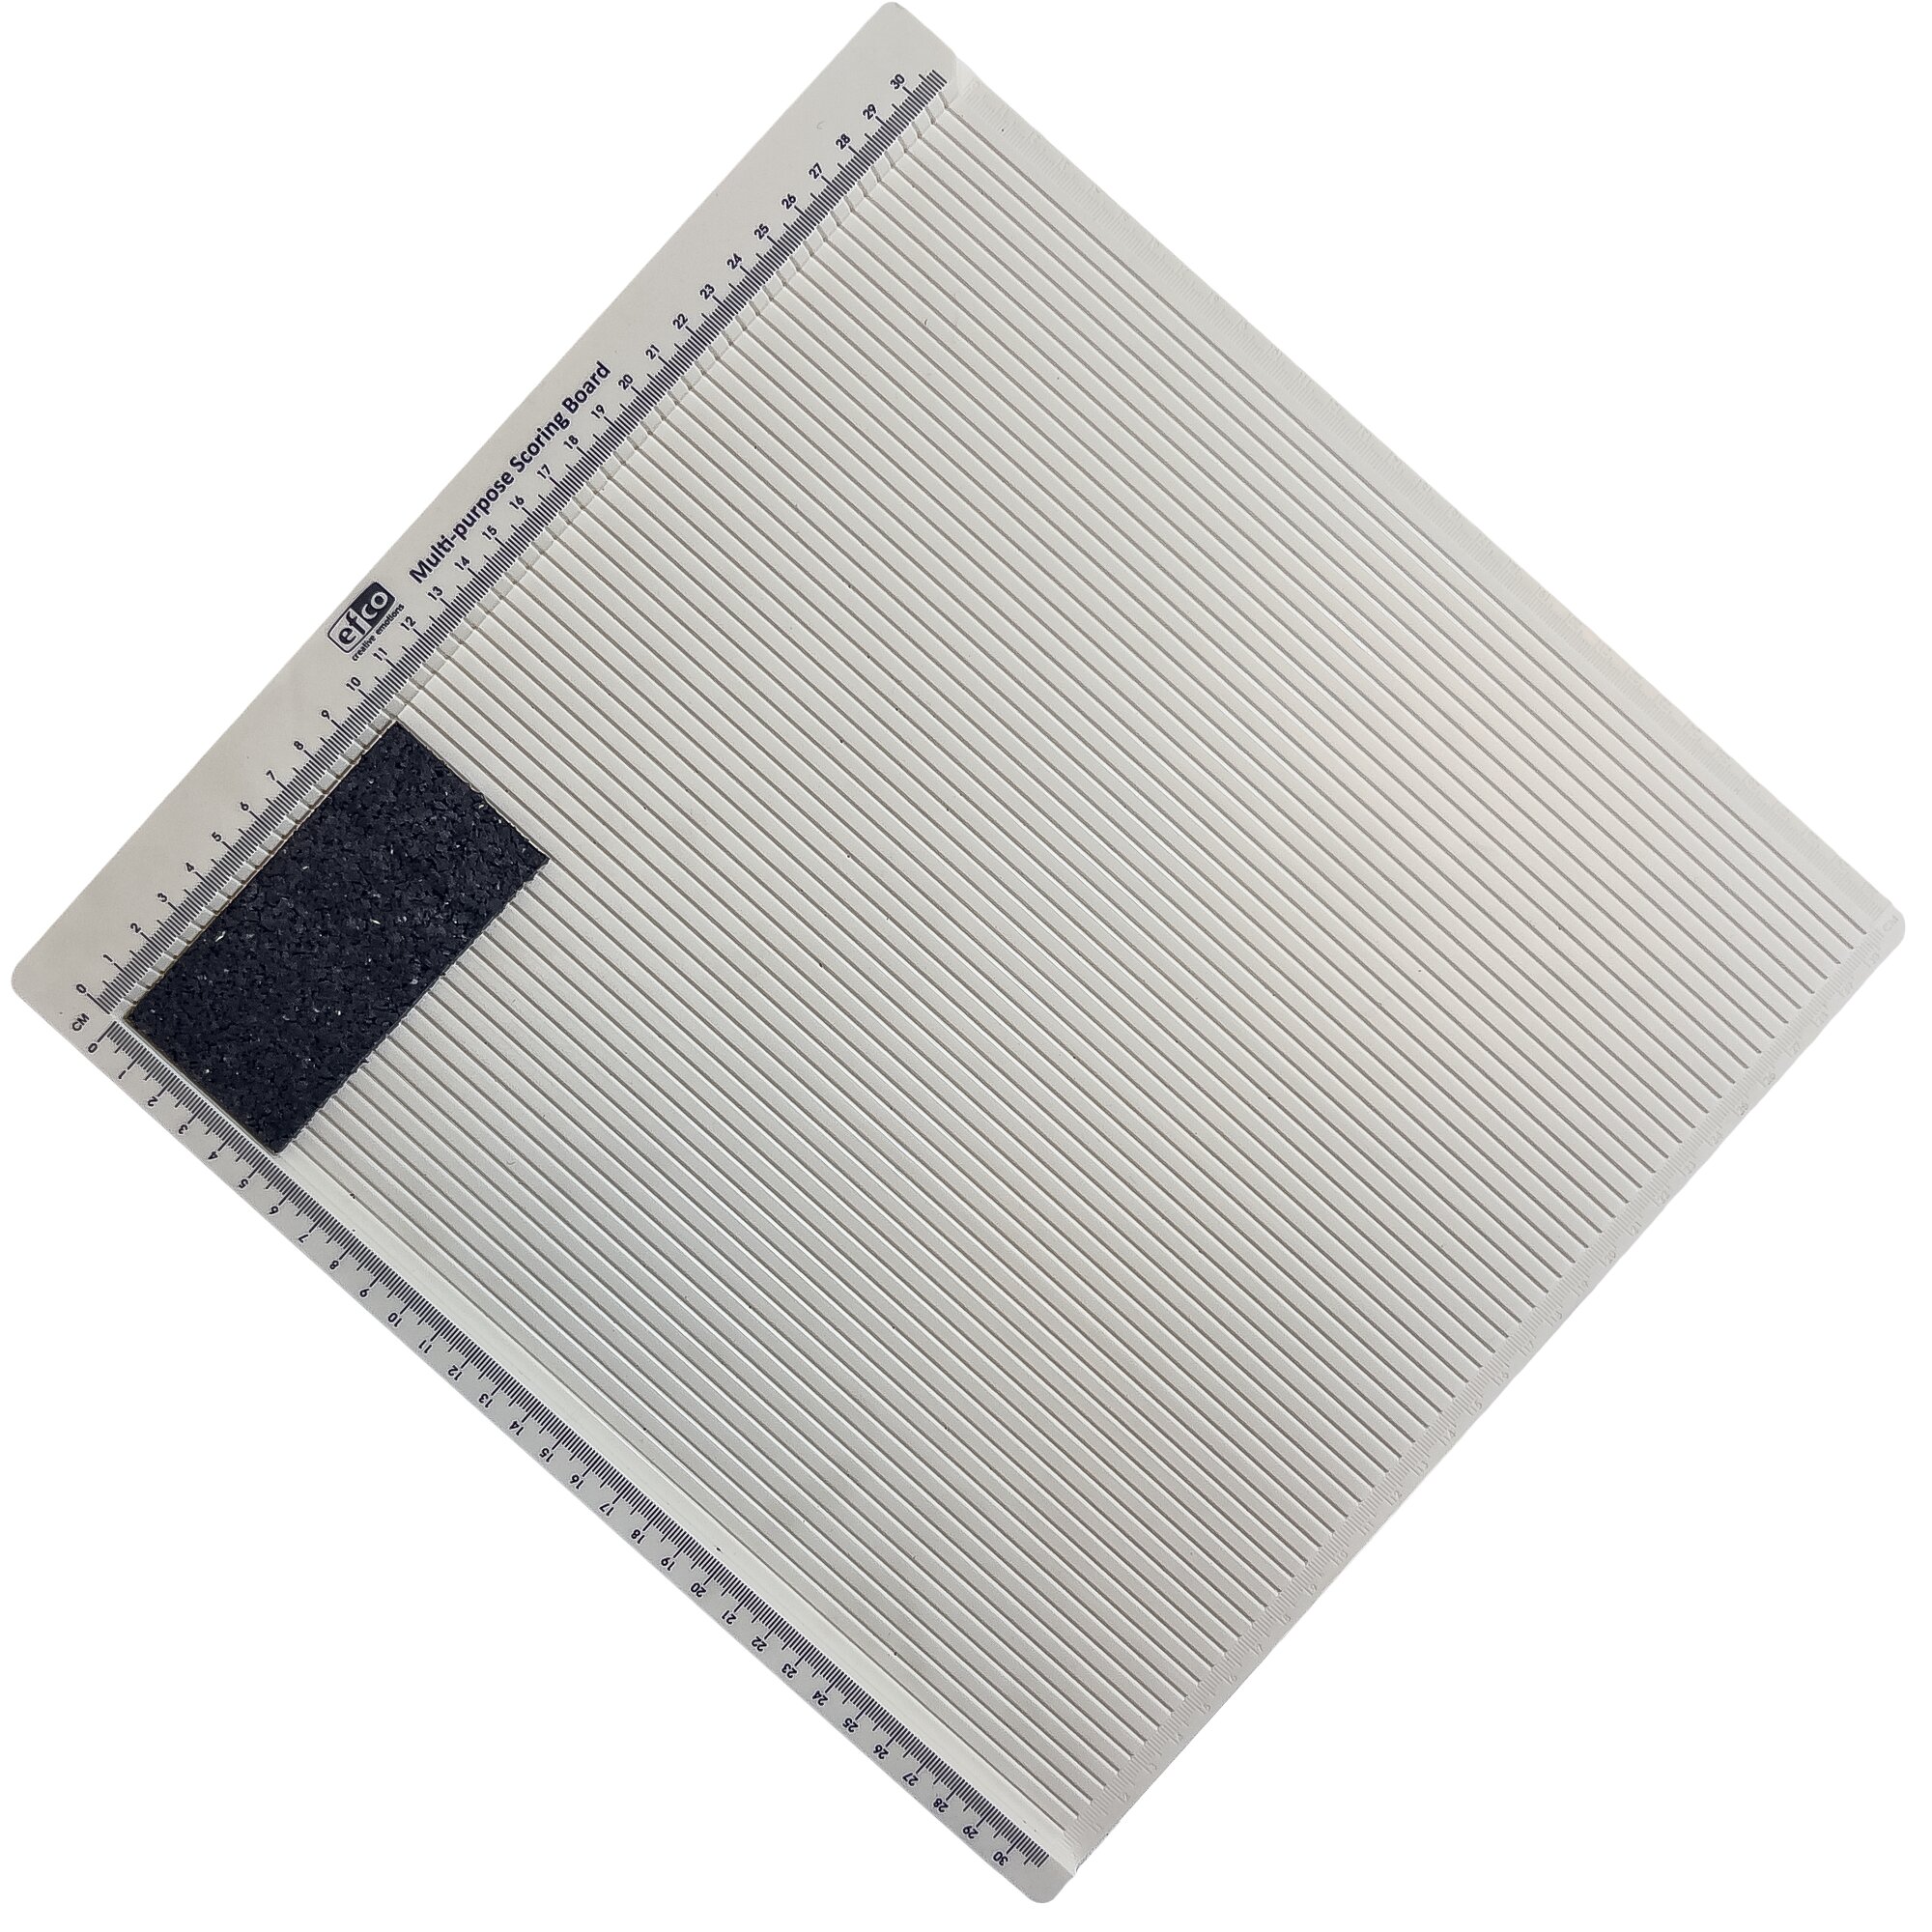 Gumová univerzální podložka FLOMA UniPad - délka 10 cm, šířka 5 cm, výška 0,8 cm